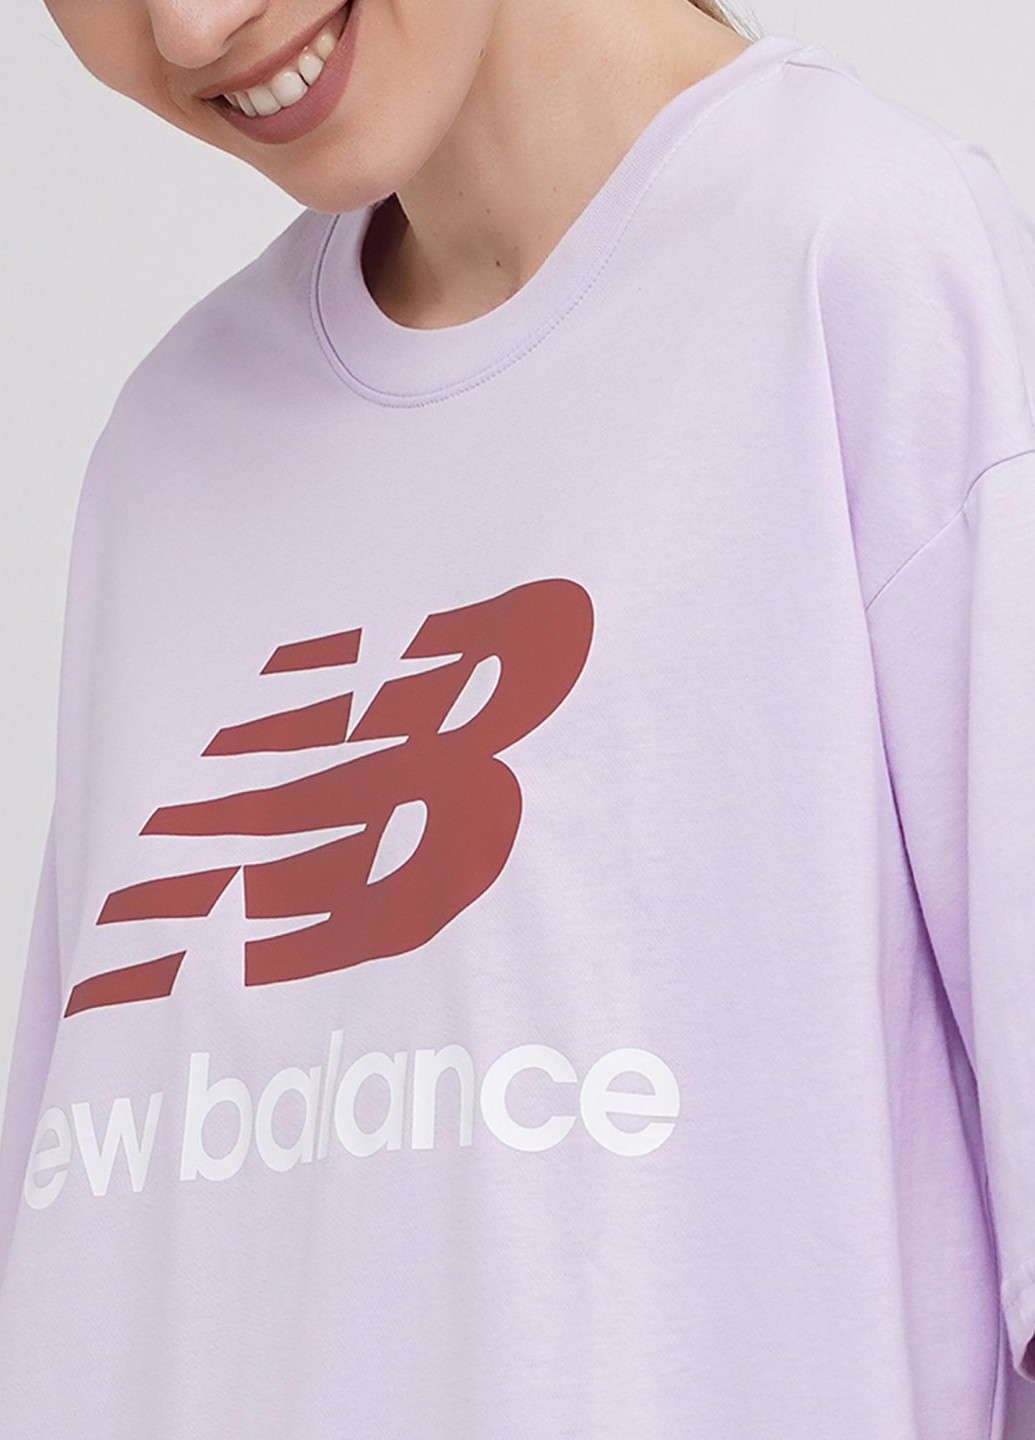 Сиреневая летняя футболка New Balance Nb Ess Stacked Logo